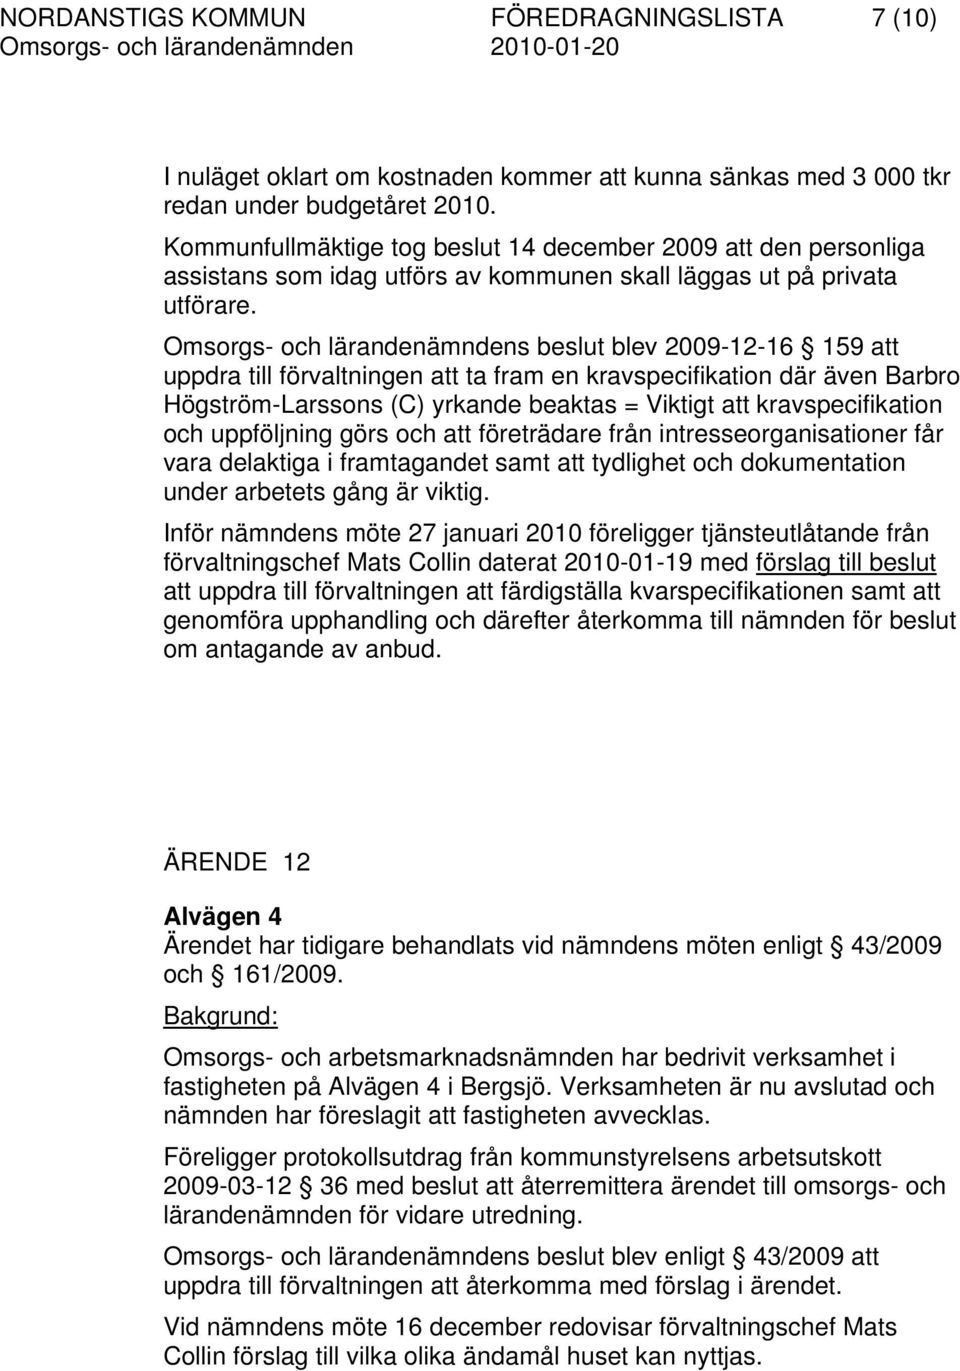 Omsorgs- och lärandenämndens beslut blev 2009-12-16 159 att uppdra till förvaltningen att ta fram en kravspecifikation där även Barbro Högström-Larssons (C) yrkande beaktas = Viktigt att